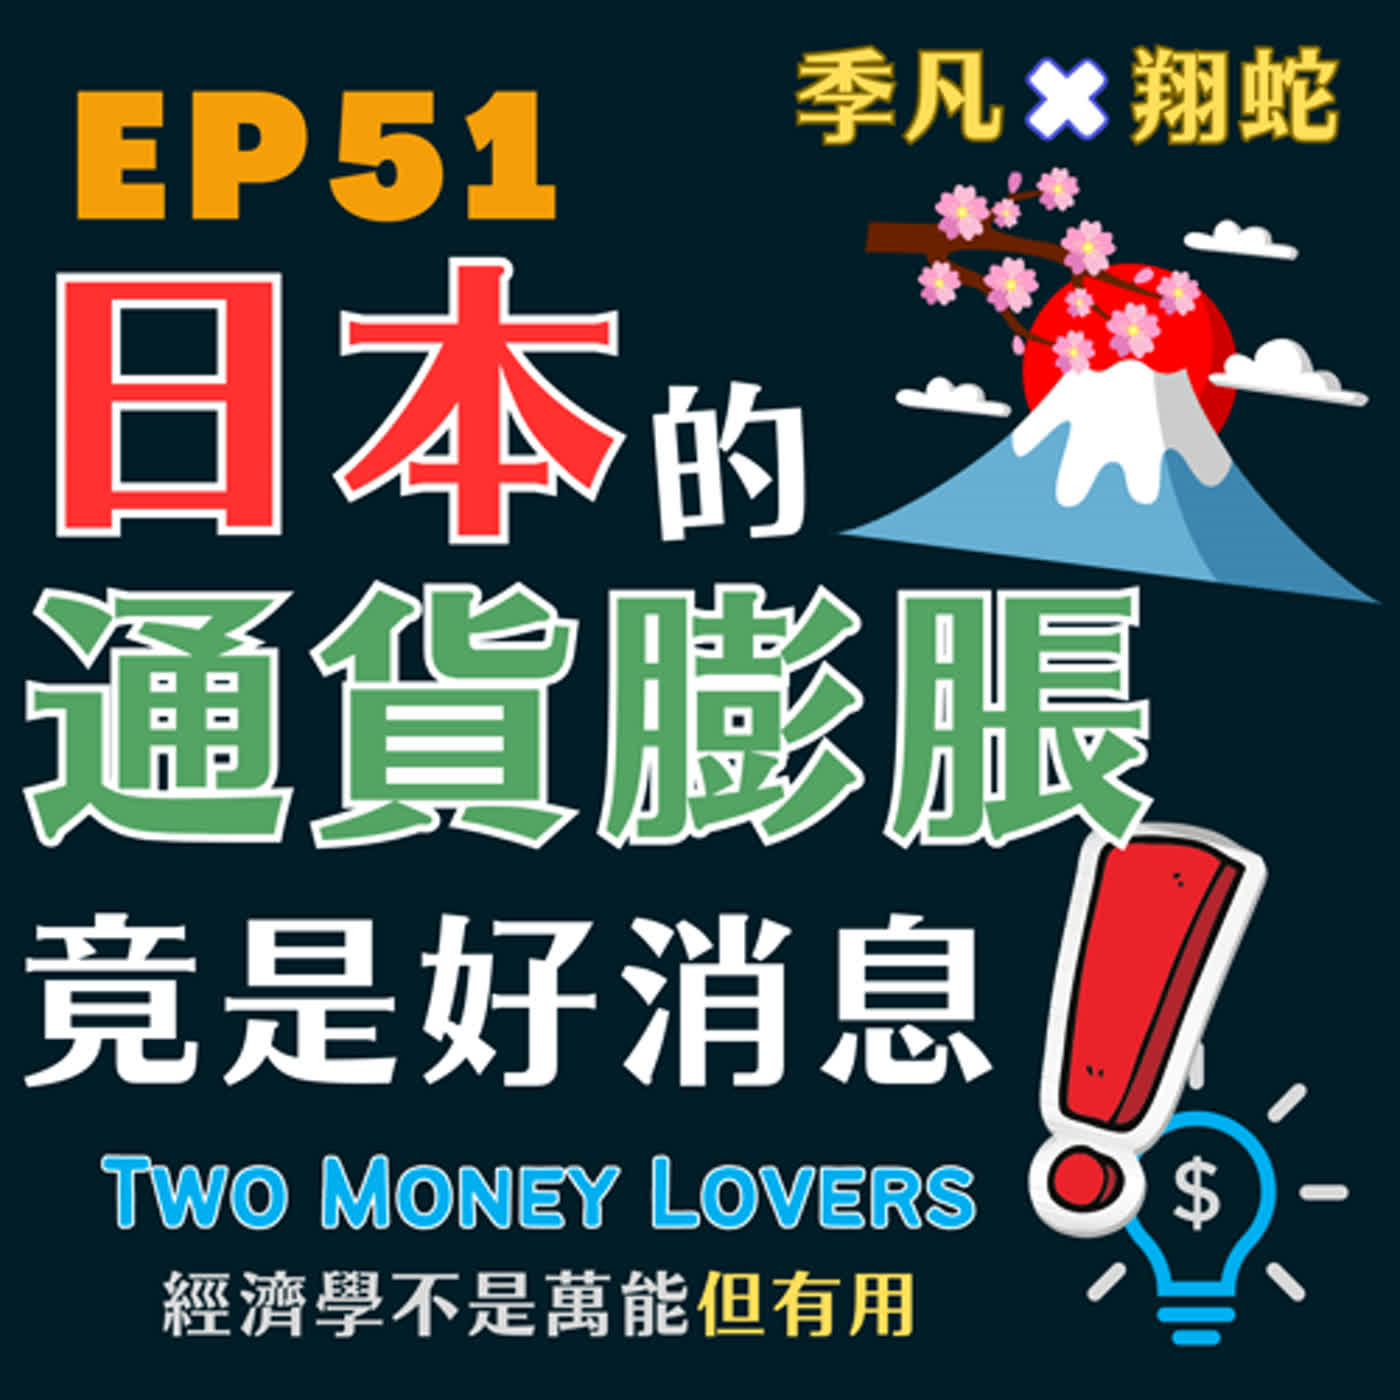 EP51 日本經濟東山再起，靠的是通貨膨脹嗎？為什麼通貨緊縮 (Deflation) 比通貨膨脹更令人擔心？